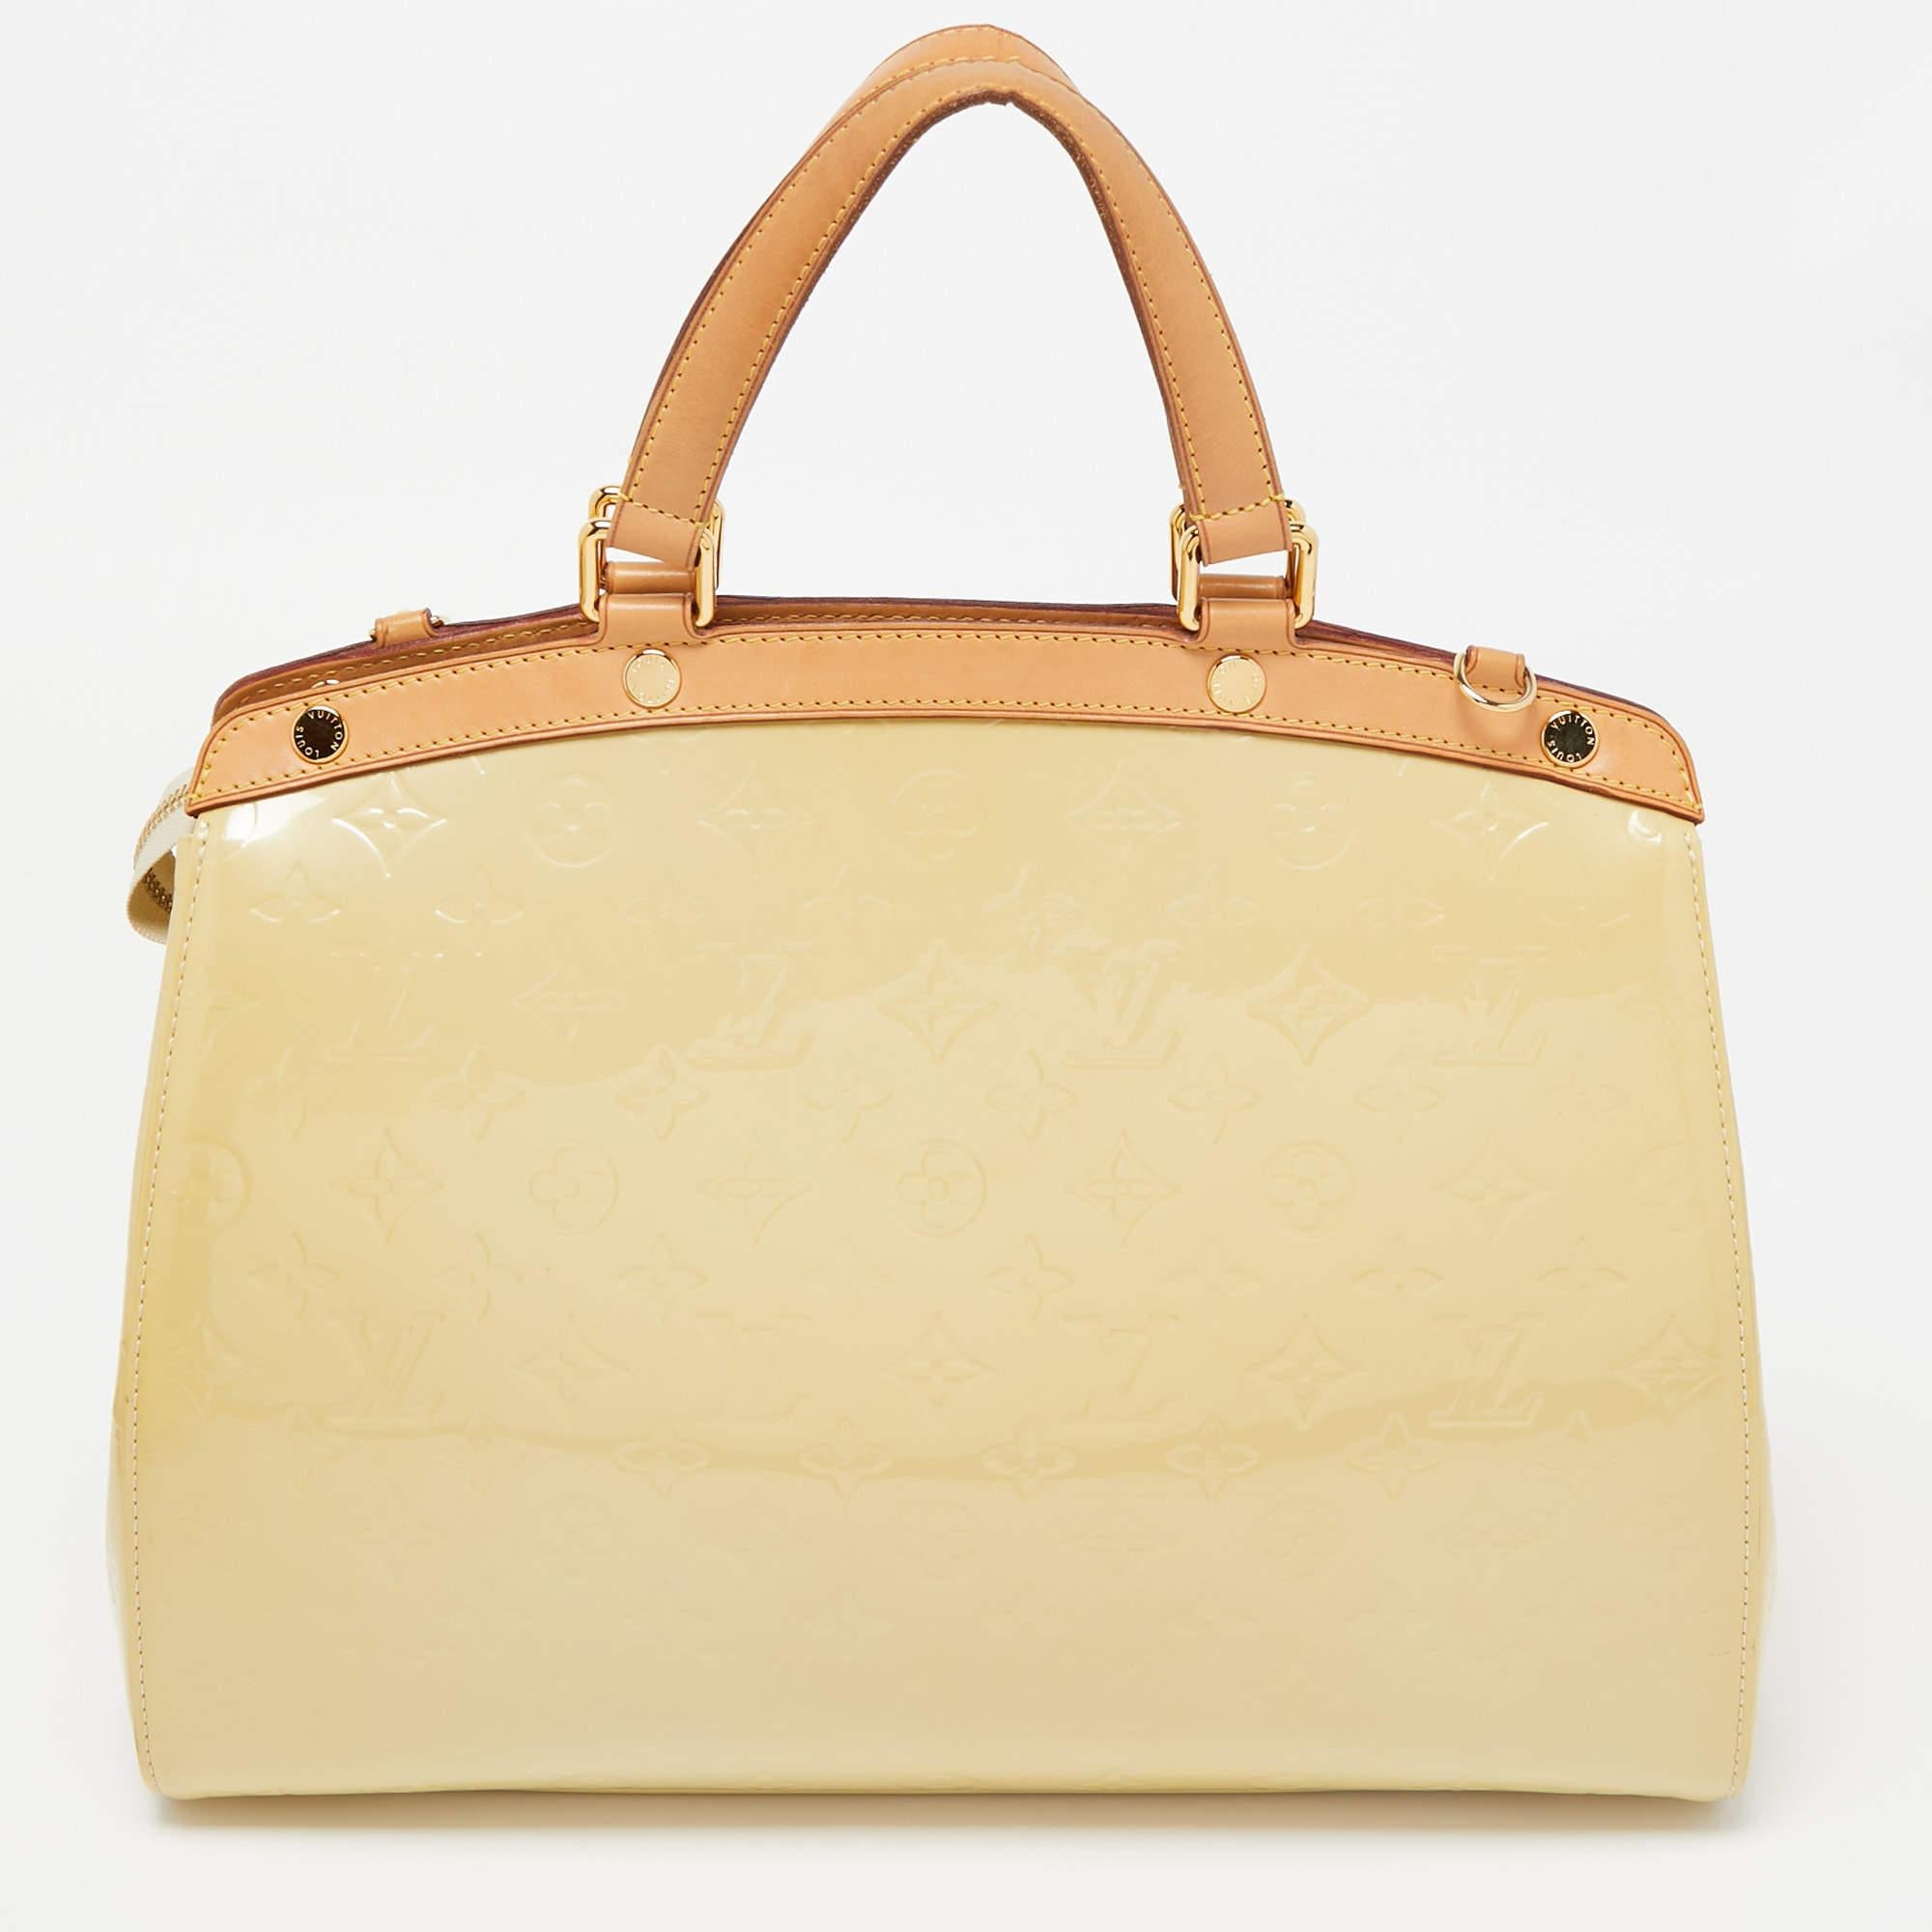 Ce sac Brea GM de la maison Louis Vuitton vous séduira à coup sûr par la précision de sa forme, de son style et de son design. Il est confectionné en Silhouette Monogram Vernis et présente une silhouette structurée et soignée. Il est doté